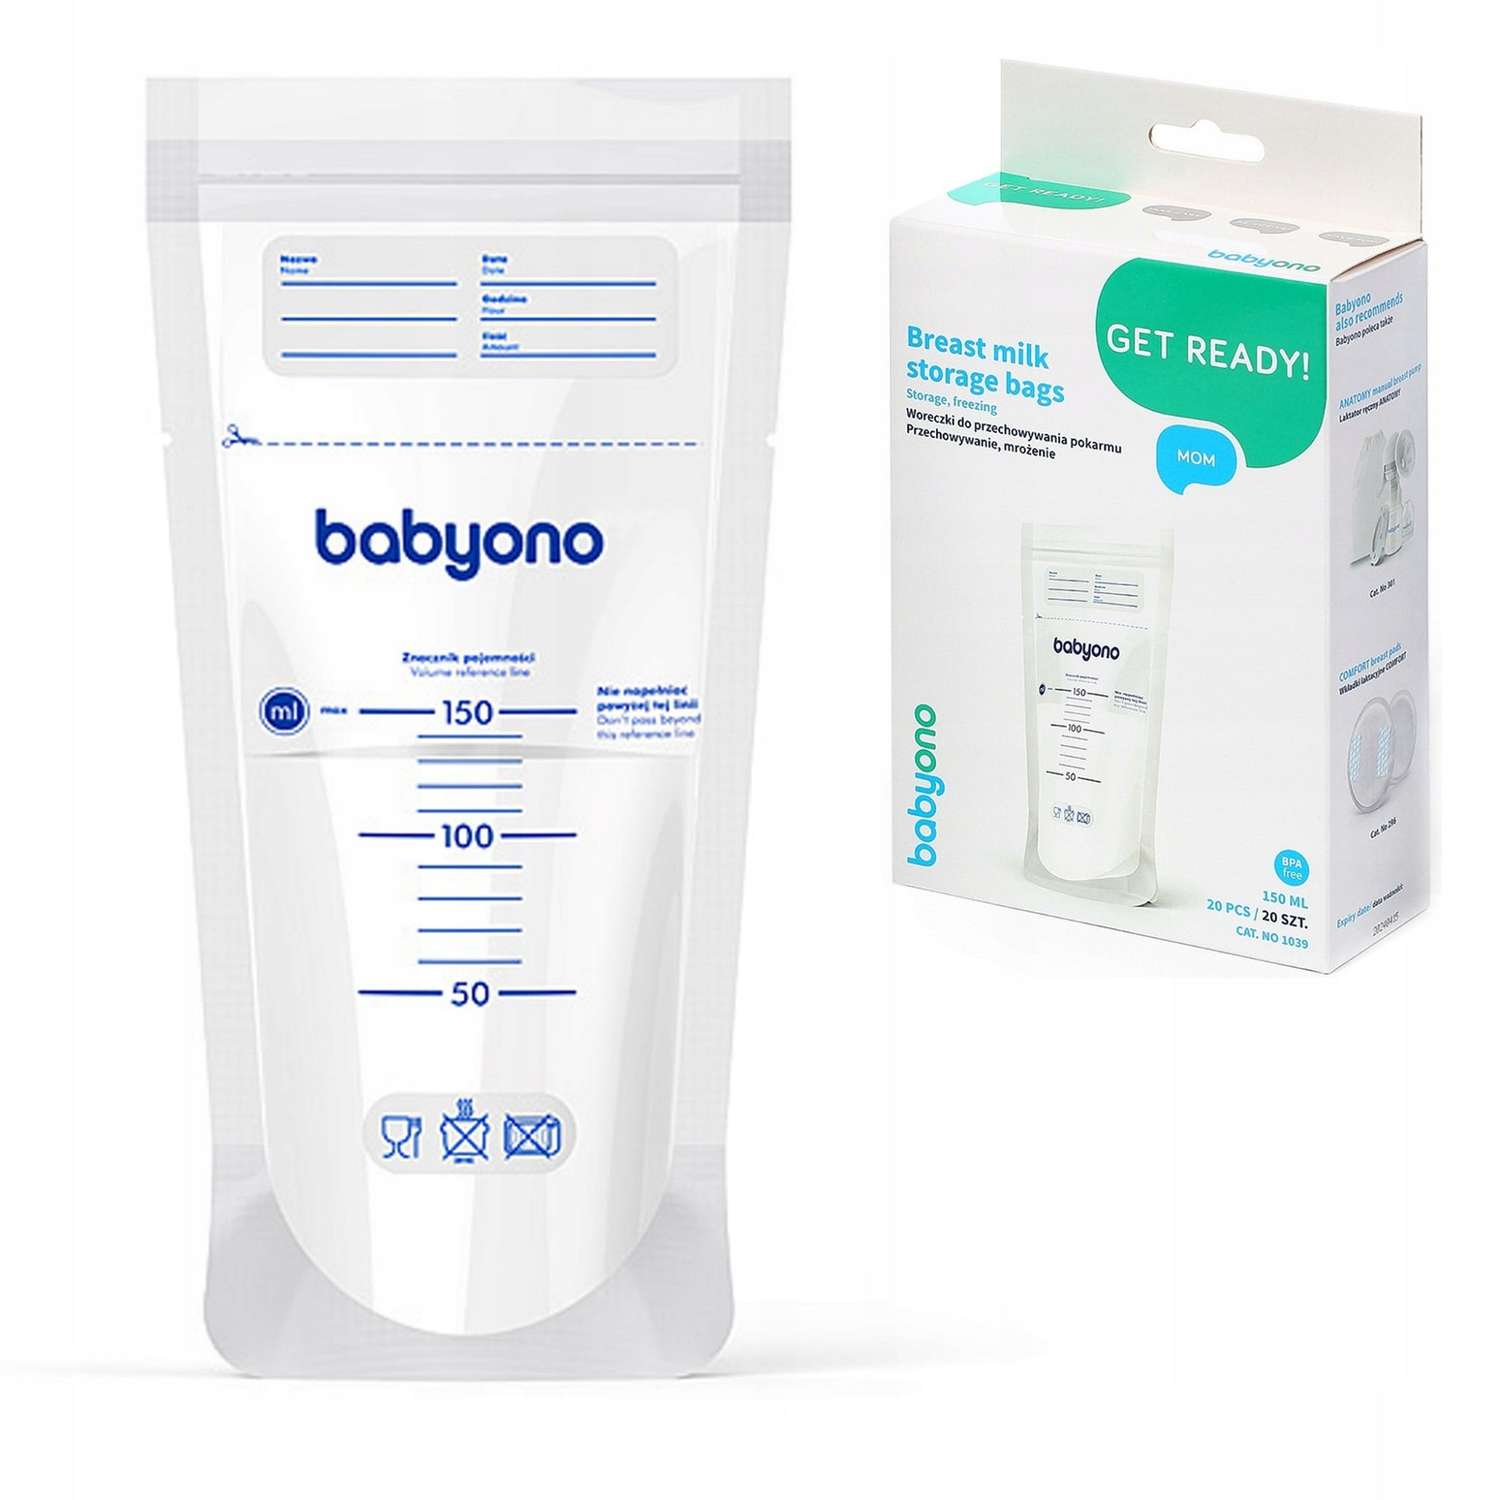 Пакеты Babyono для хранения грудного молока 20шт. в упаковке - фото 8